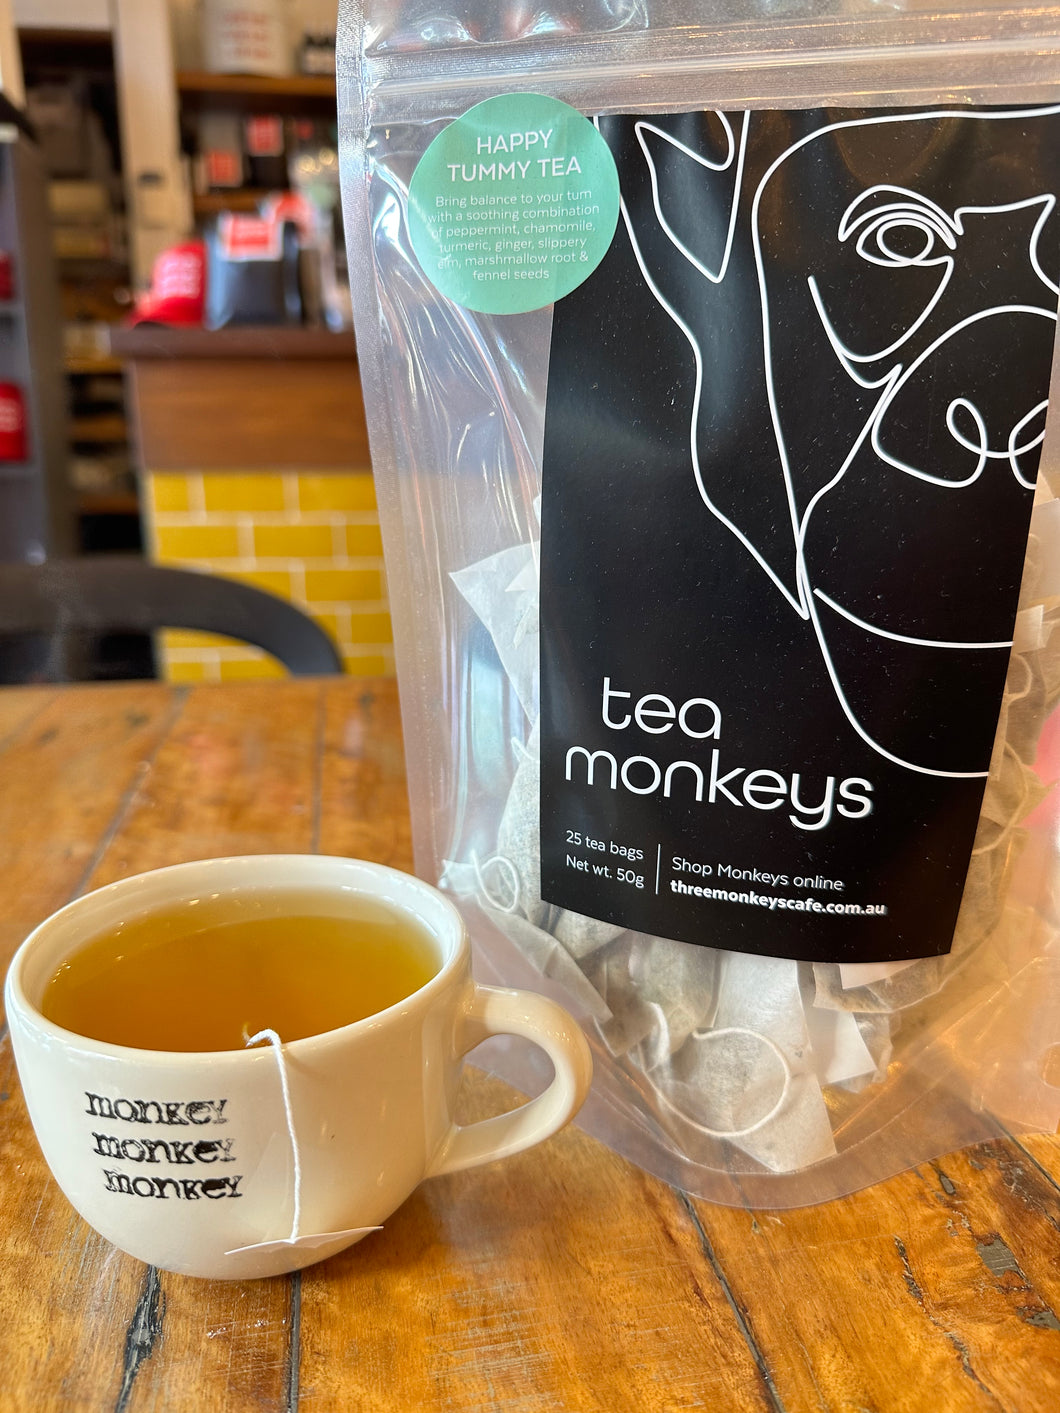 tea monkeys happy tummy tea - 25pk Tea bags